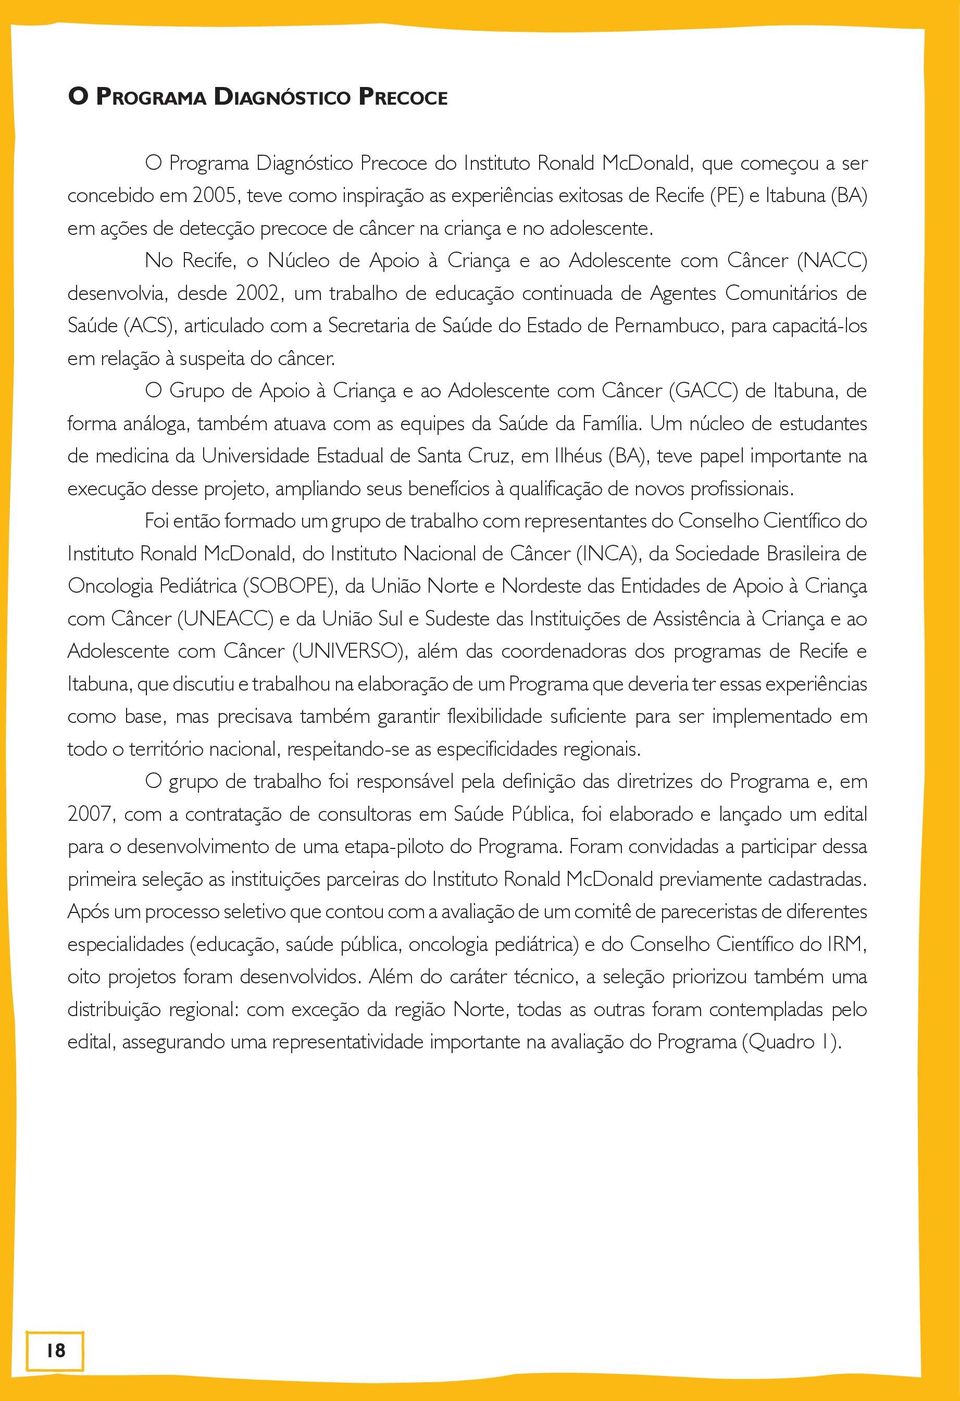 No Recife, o Núcleo de Apoio à Criança e ao Adolescente com Câncer (NACC) desenvolvia, desde 2002, um trabalho de educação continuada de Agentes Comunitários de Saúde (ACS), articulado com a